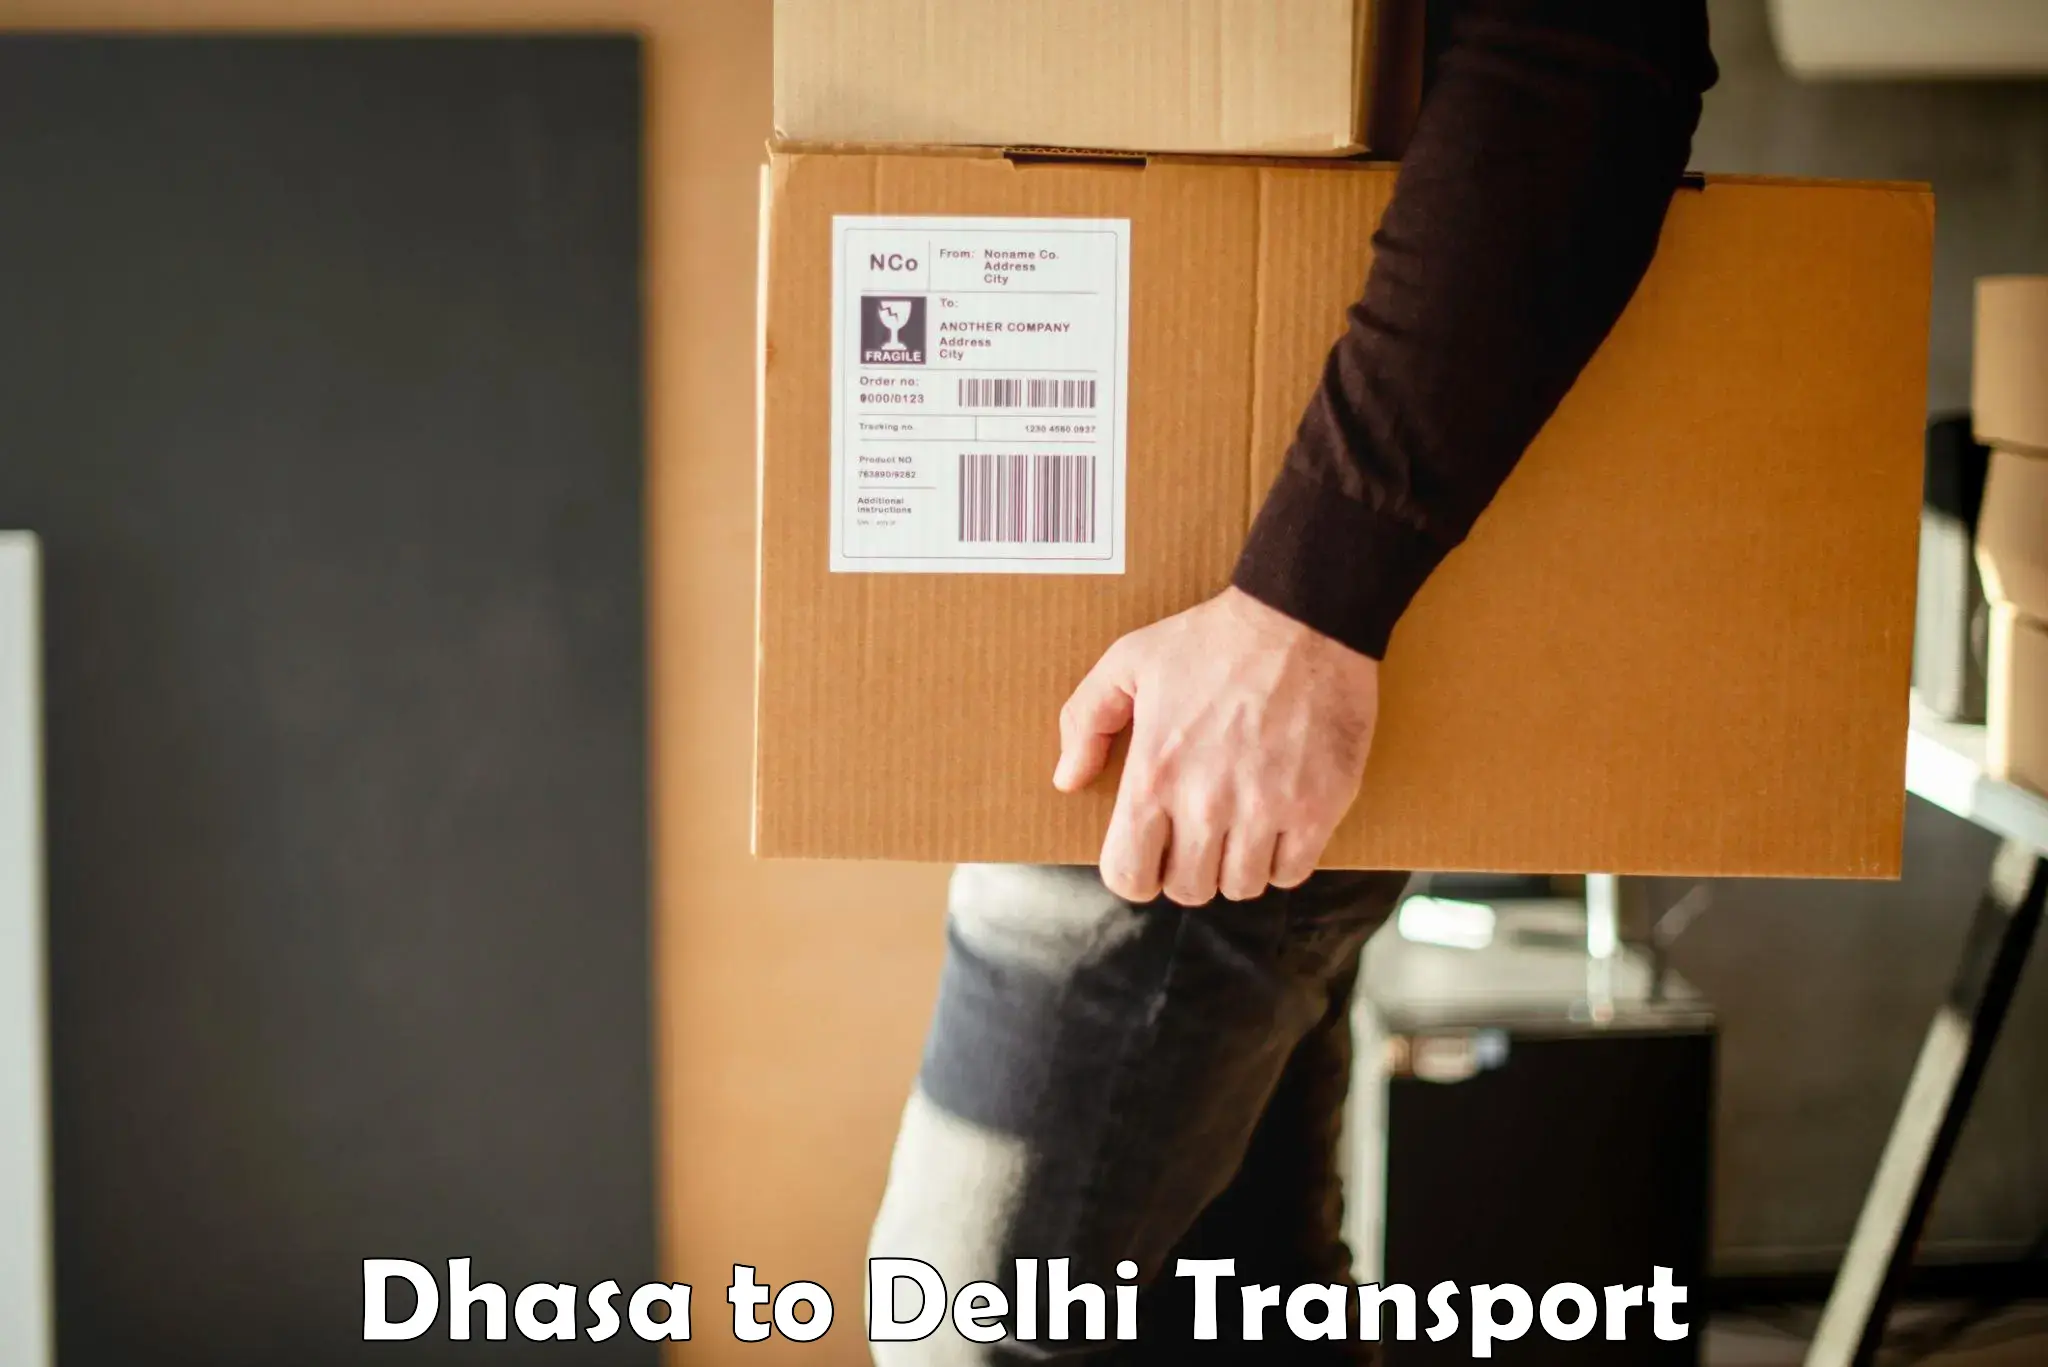 Online transport service Dhasa to Delhi